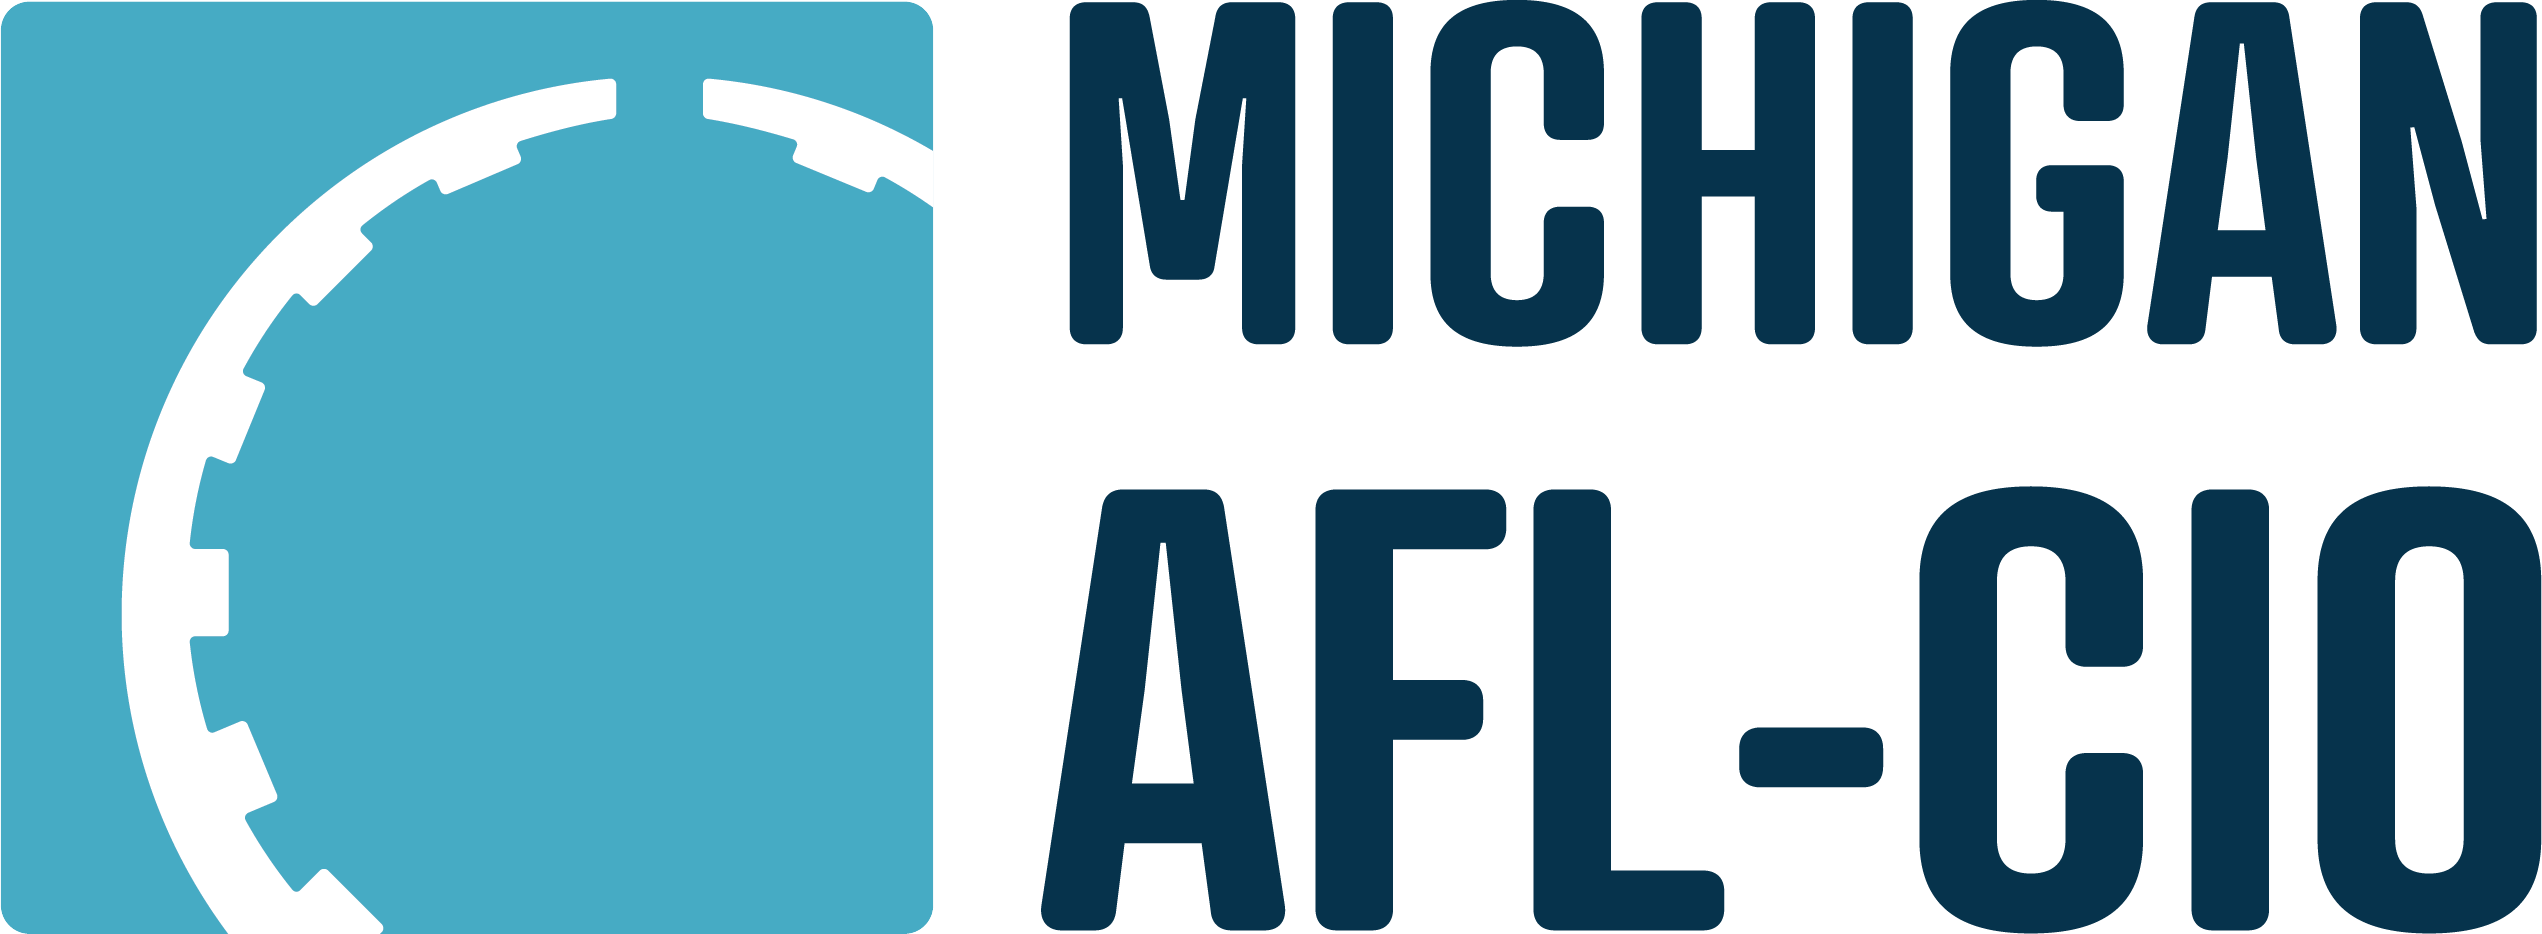 MIAFLCIO Logo